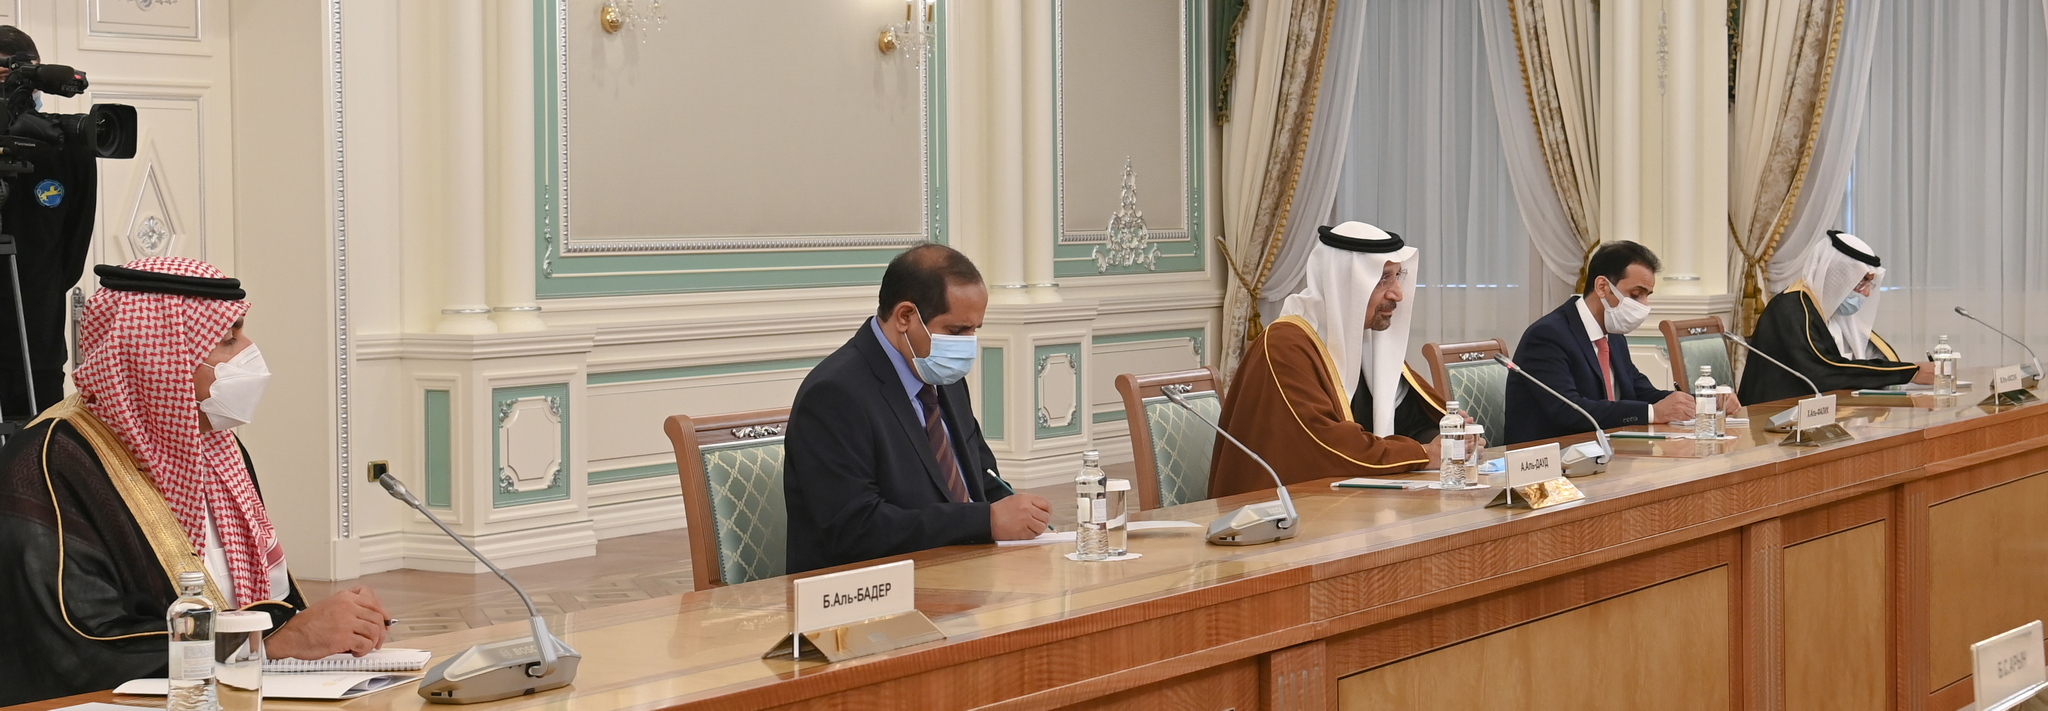 Тоқаев Сауд Арабиясы Корольдігінің Инвестиция министрі Халид Әл-Фалихті қабылдады